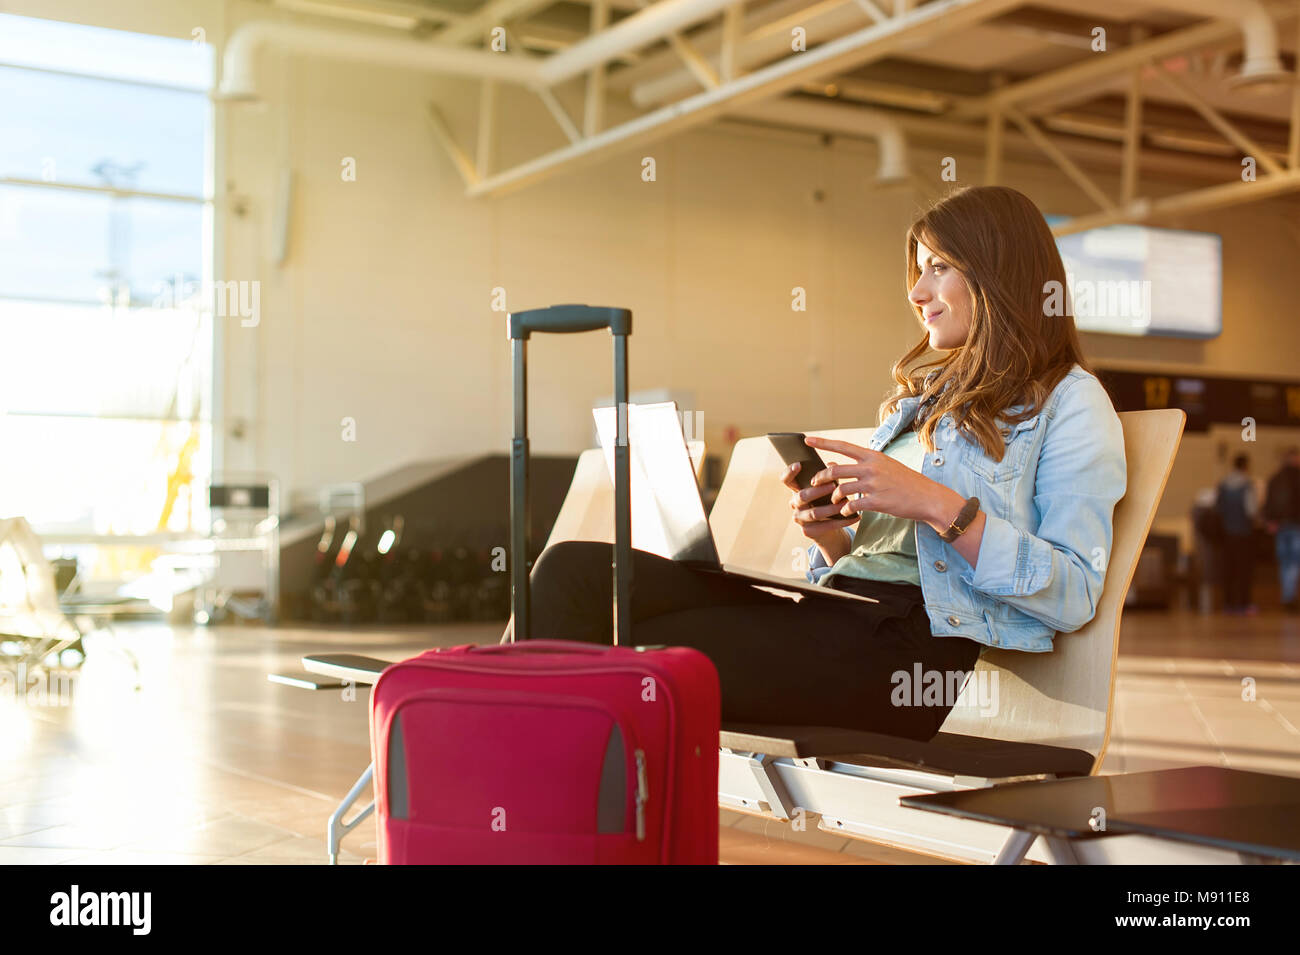 Aeroporto femmina giovane passeggero su smart phone e il computer portatile seduti nella sala terminale durante l'attesa per il suo volo Foto Stock